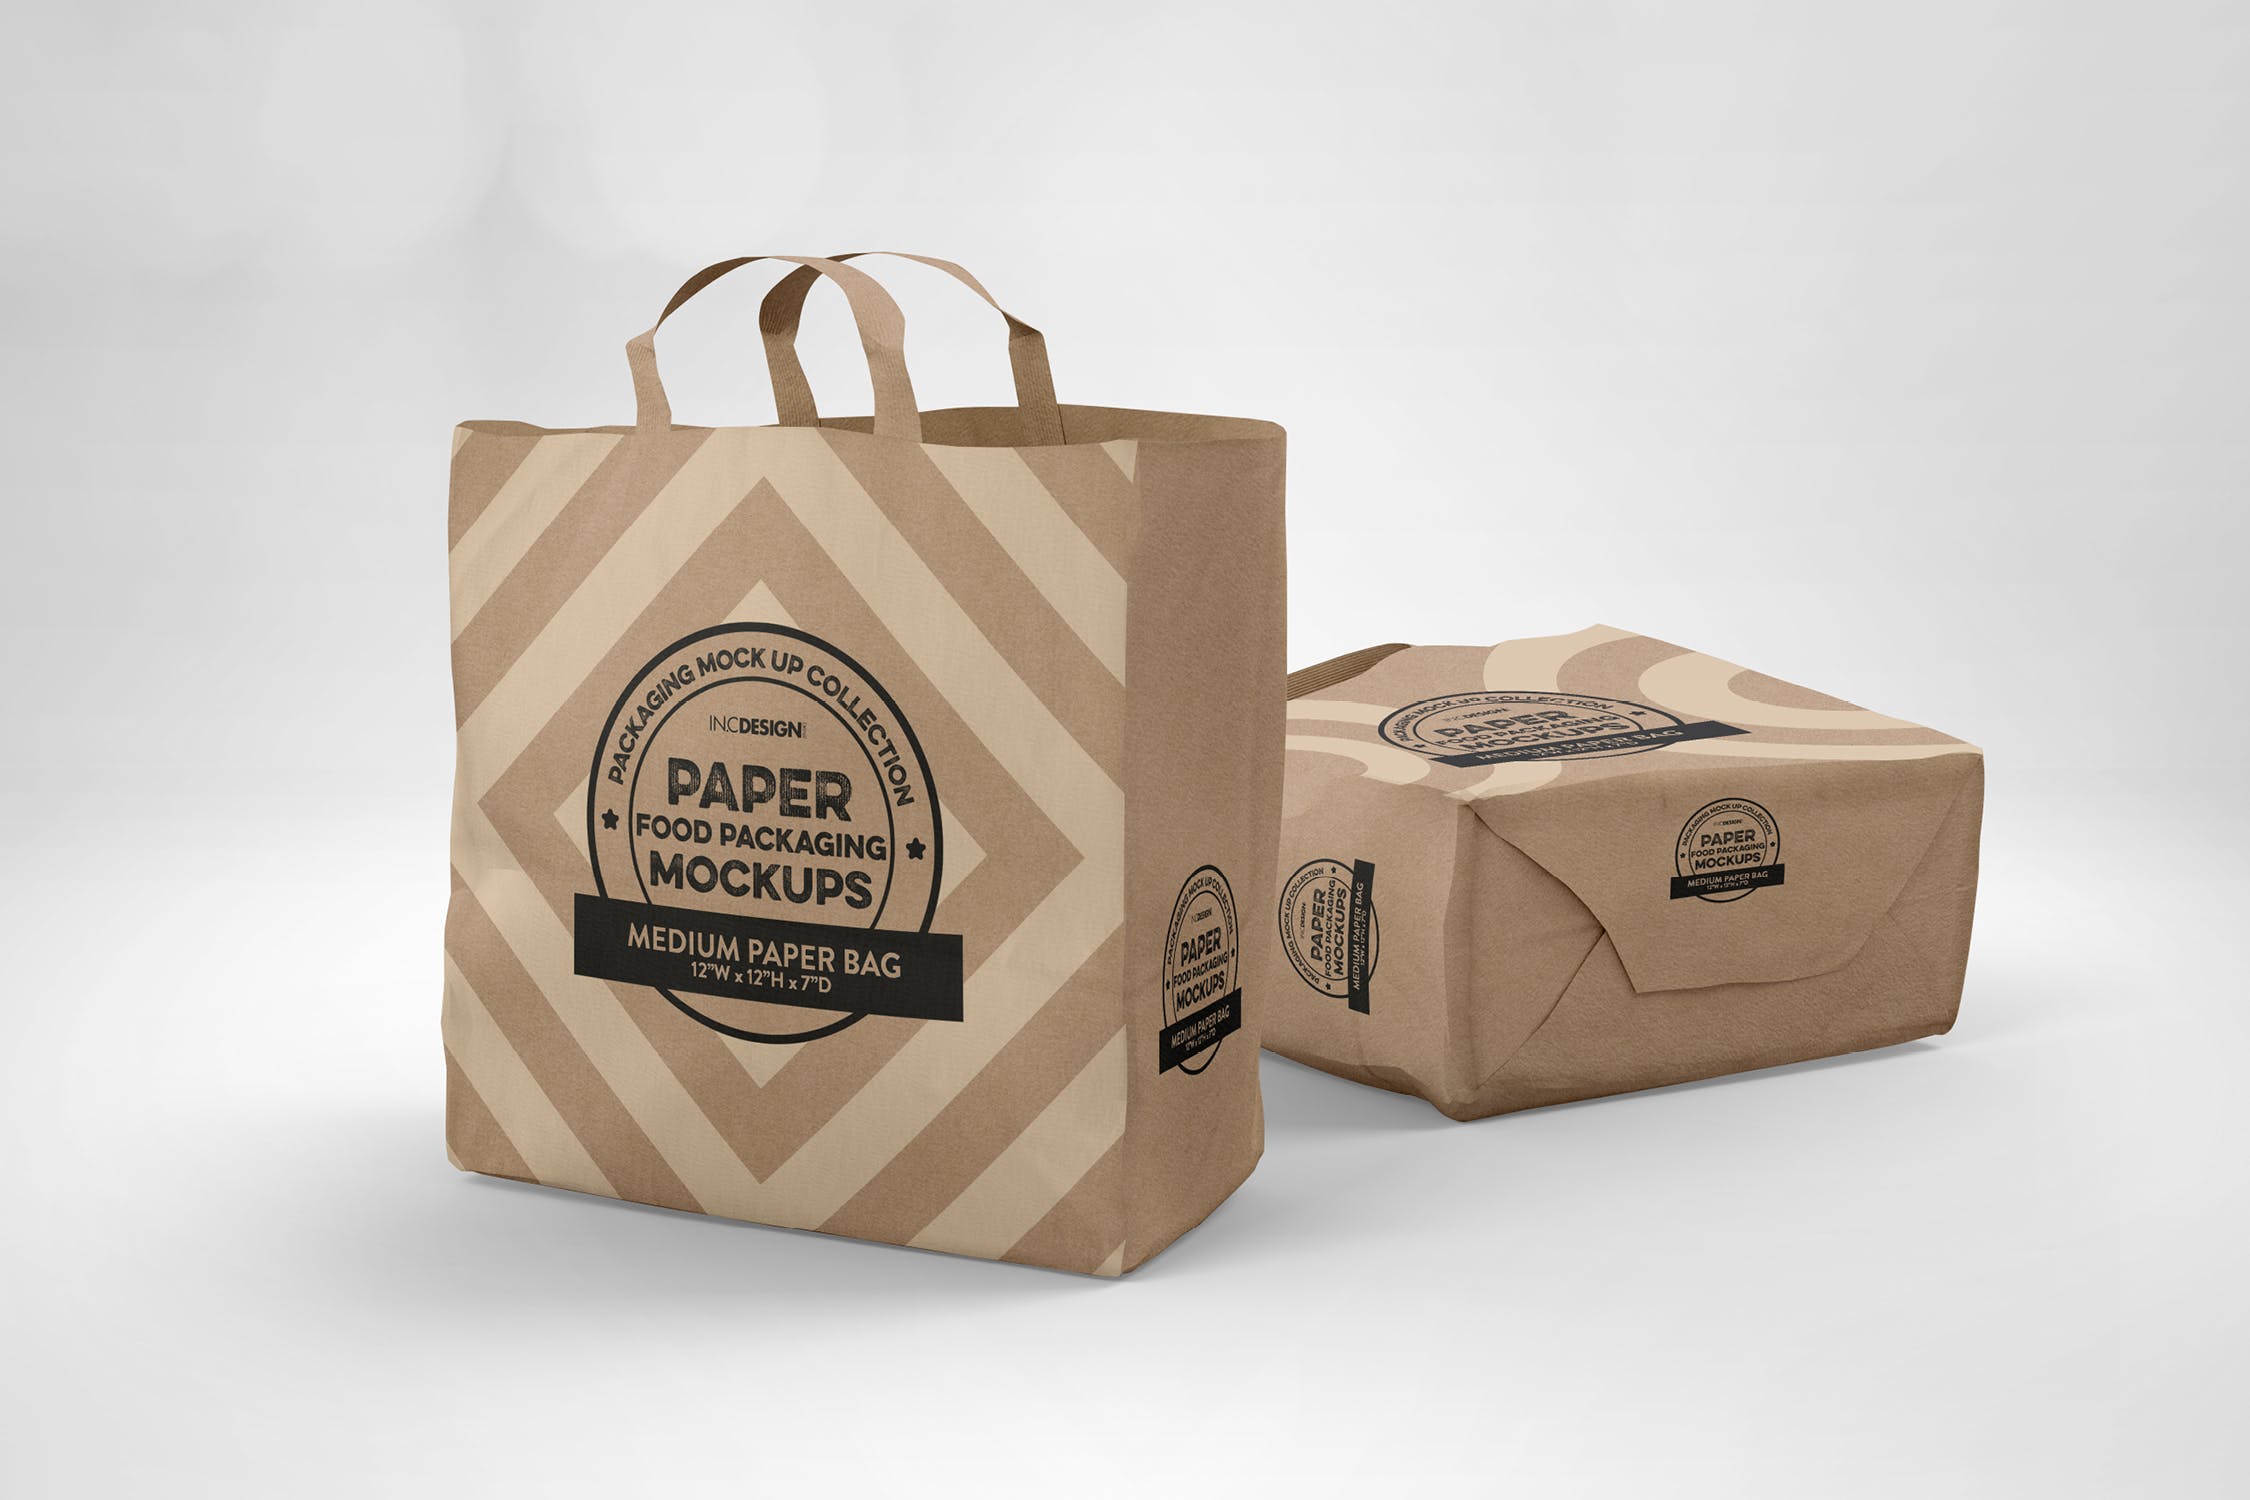 中型纸袋包装设计效果图第一素材精选 Medium Paper Bags Packaging Mockup插图(2)